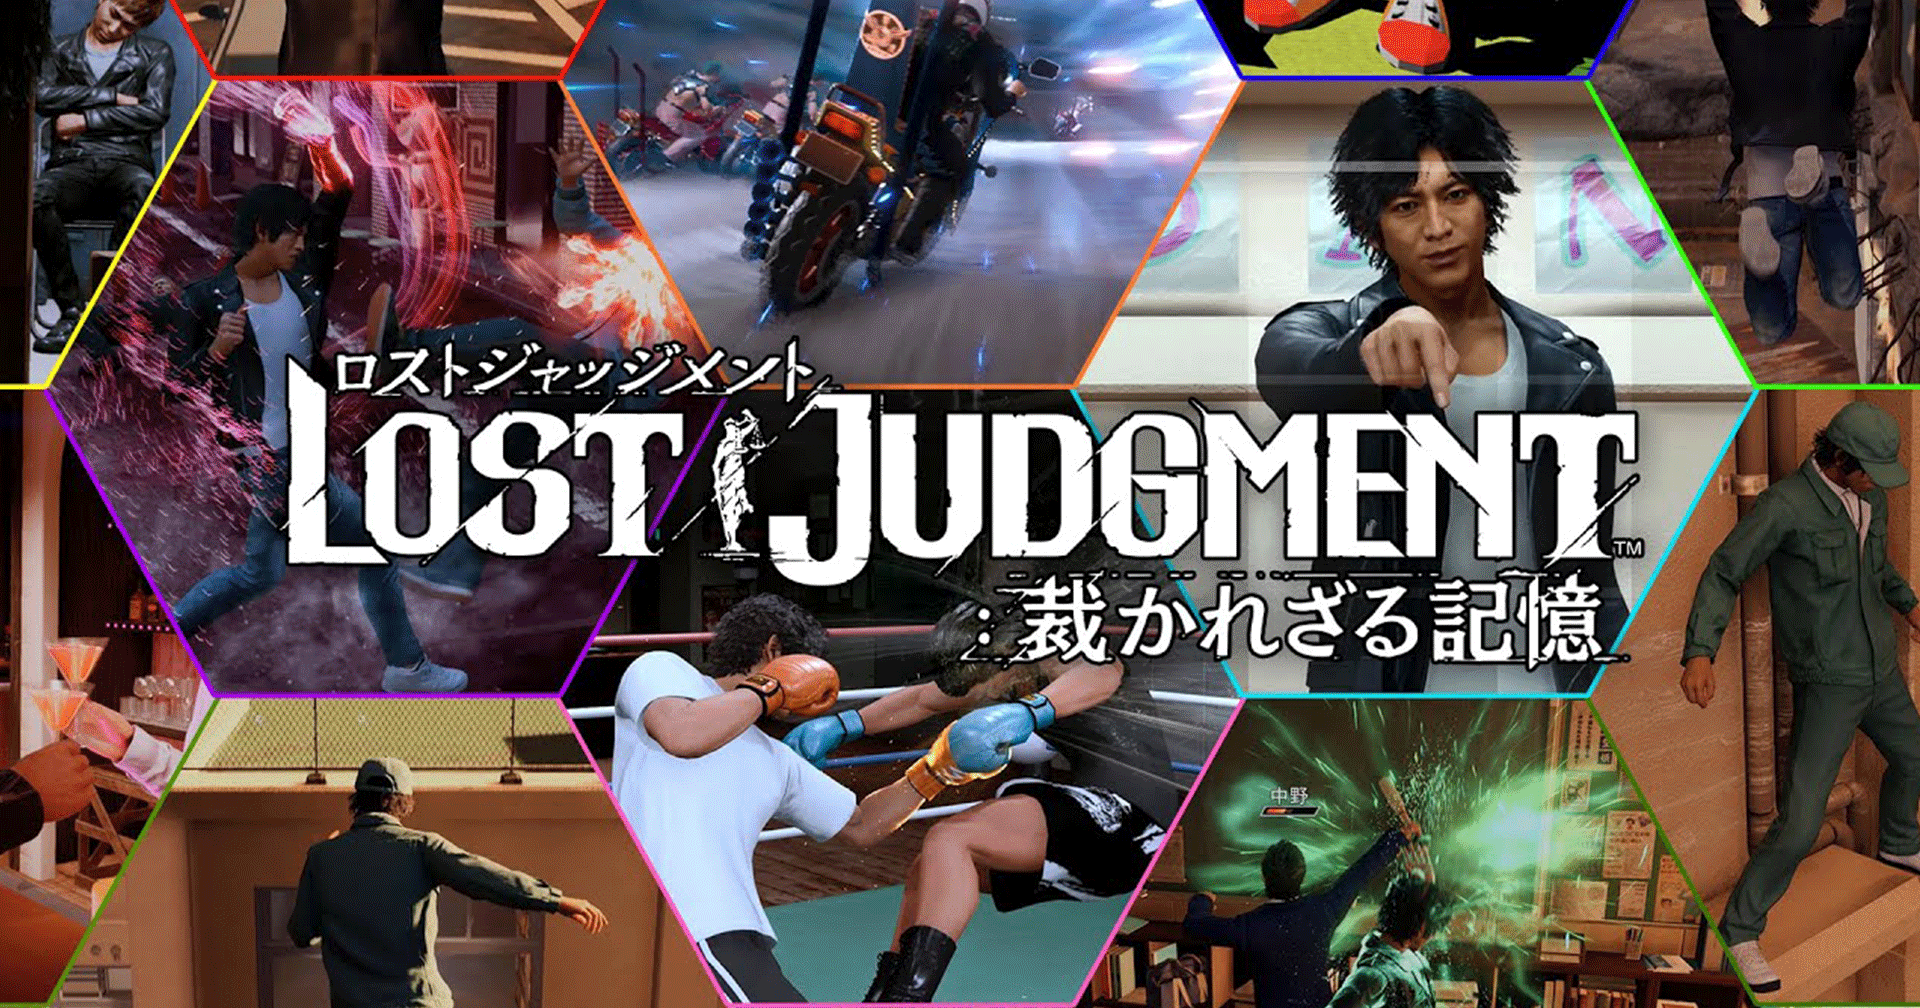 Lost Judgment เผยตัวอย่างเกมเพลย์ใหม่ พร้อมวางจำหน่ายในวันที่ 24 กันยายนนี้